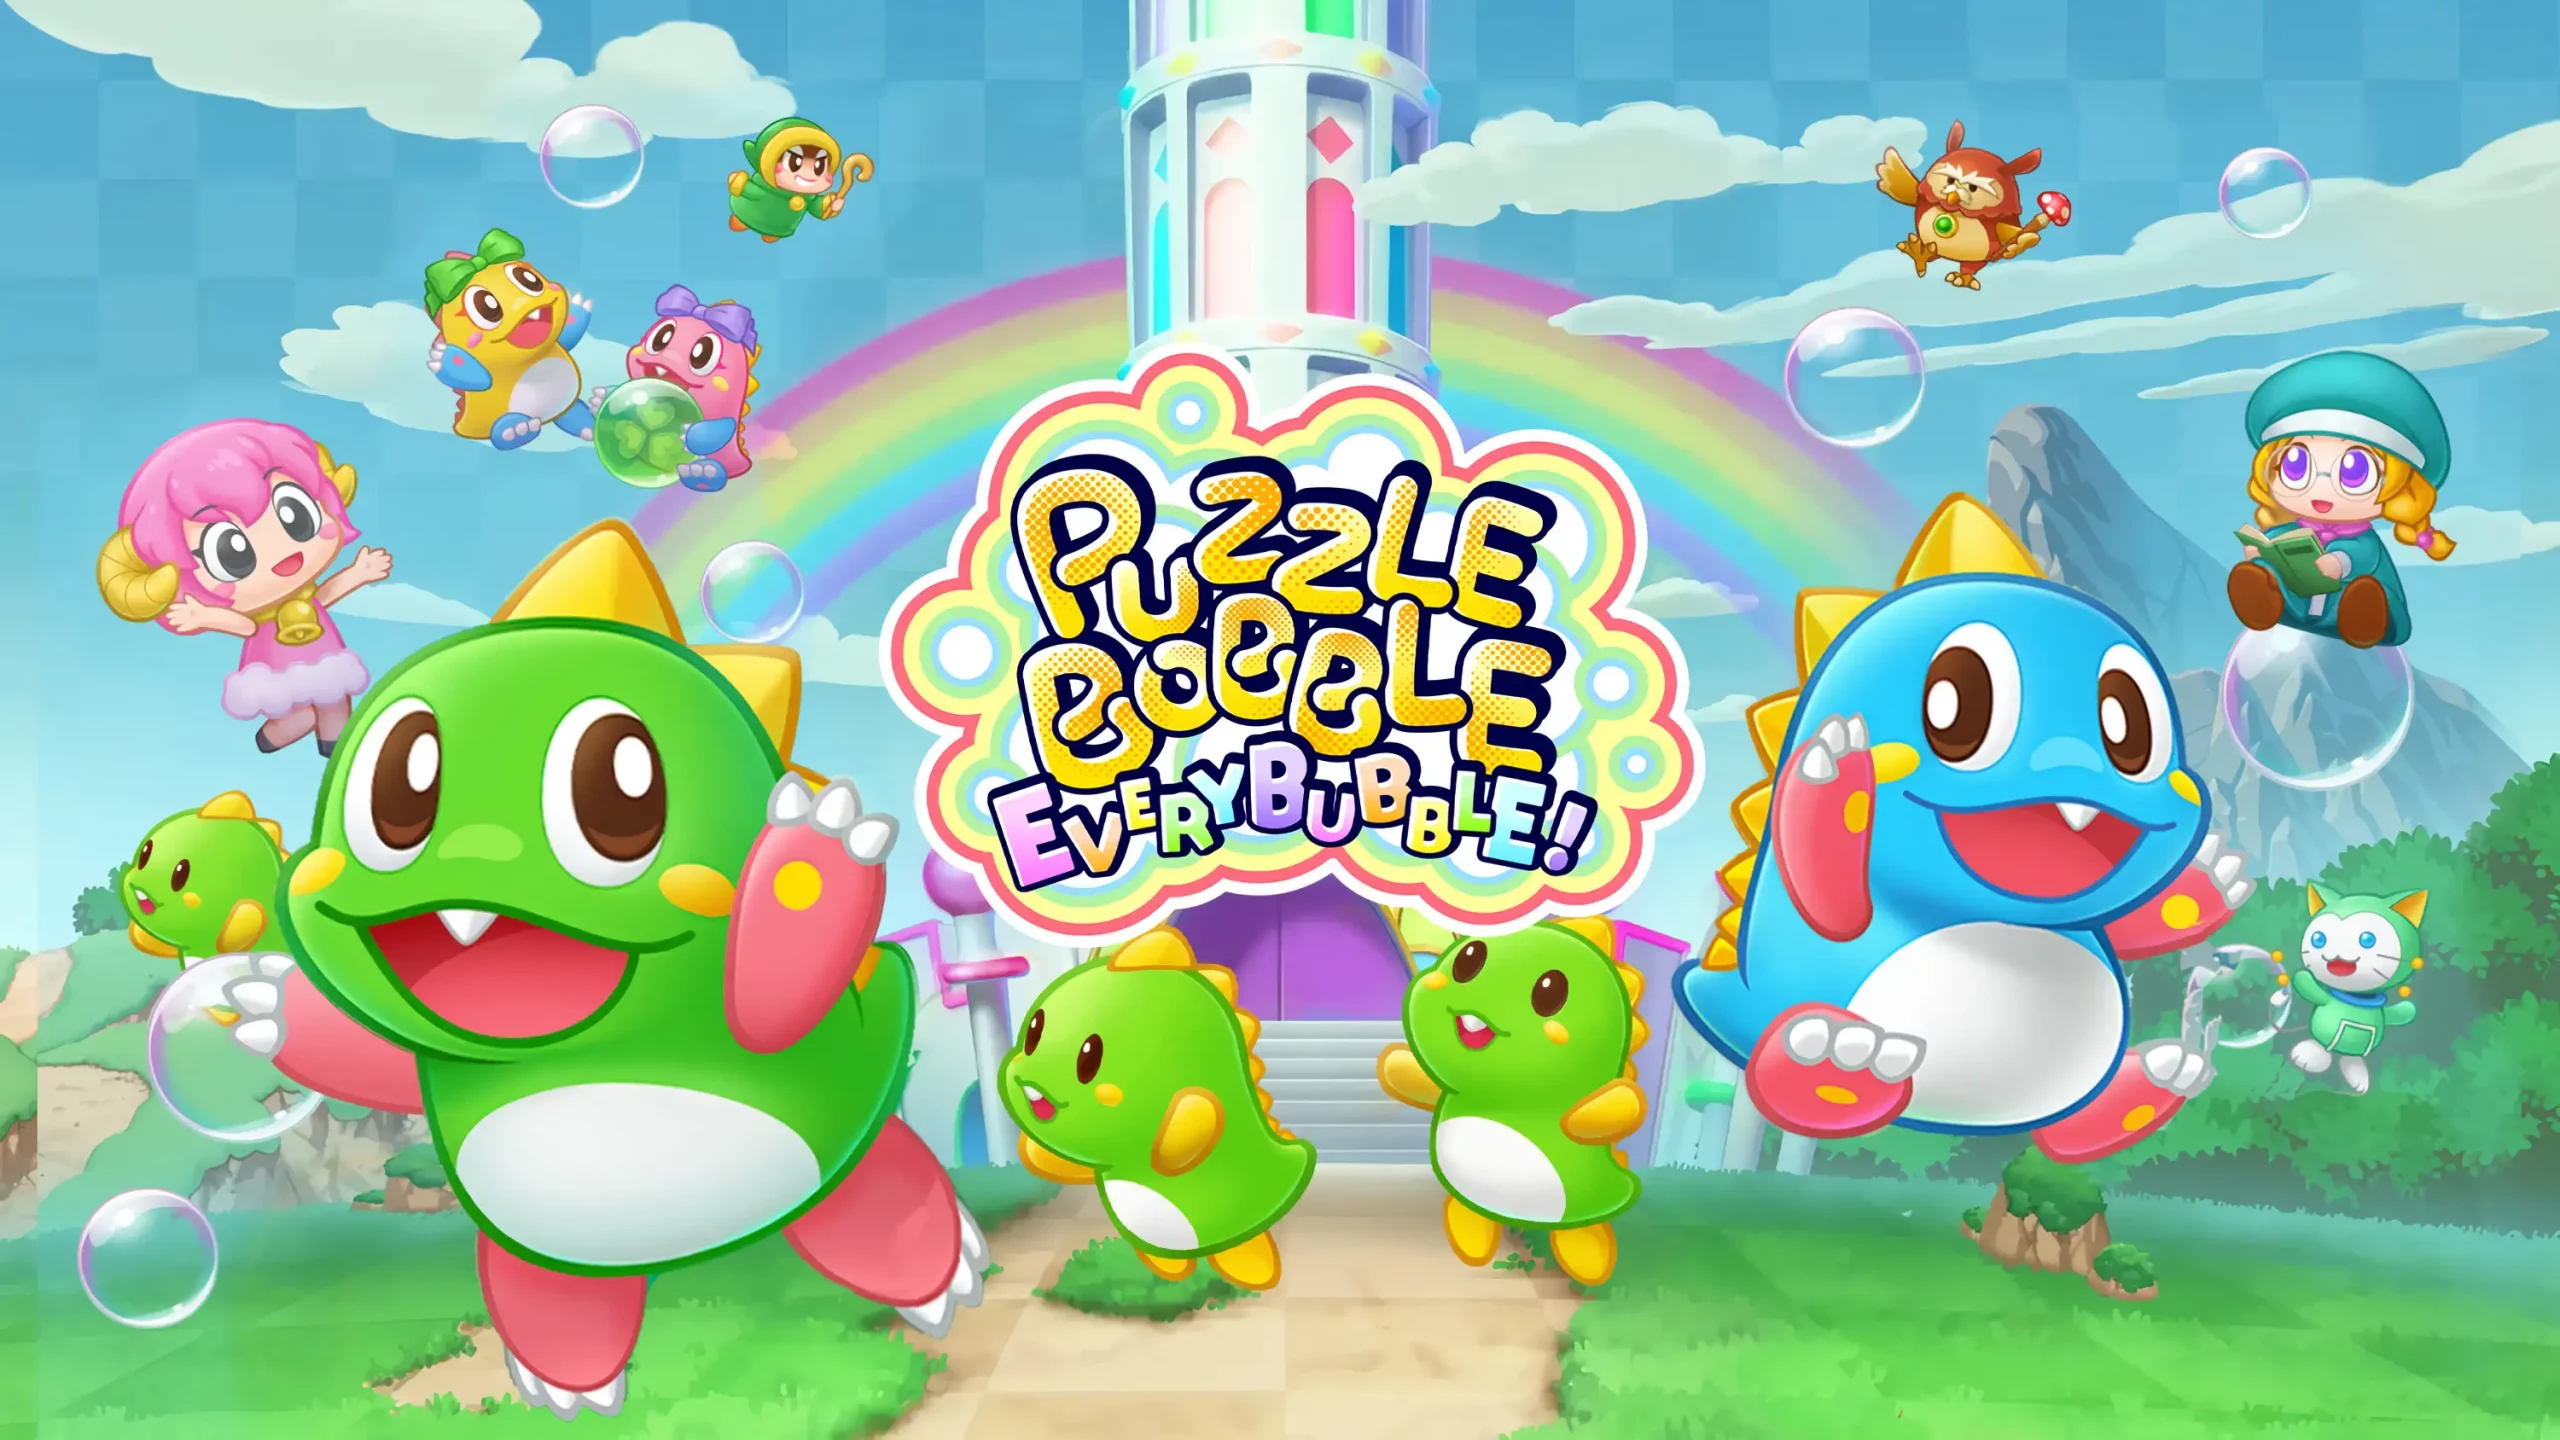 Ressenya – Puzzle Bobble Everybubble!